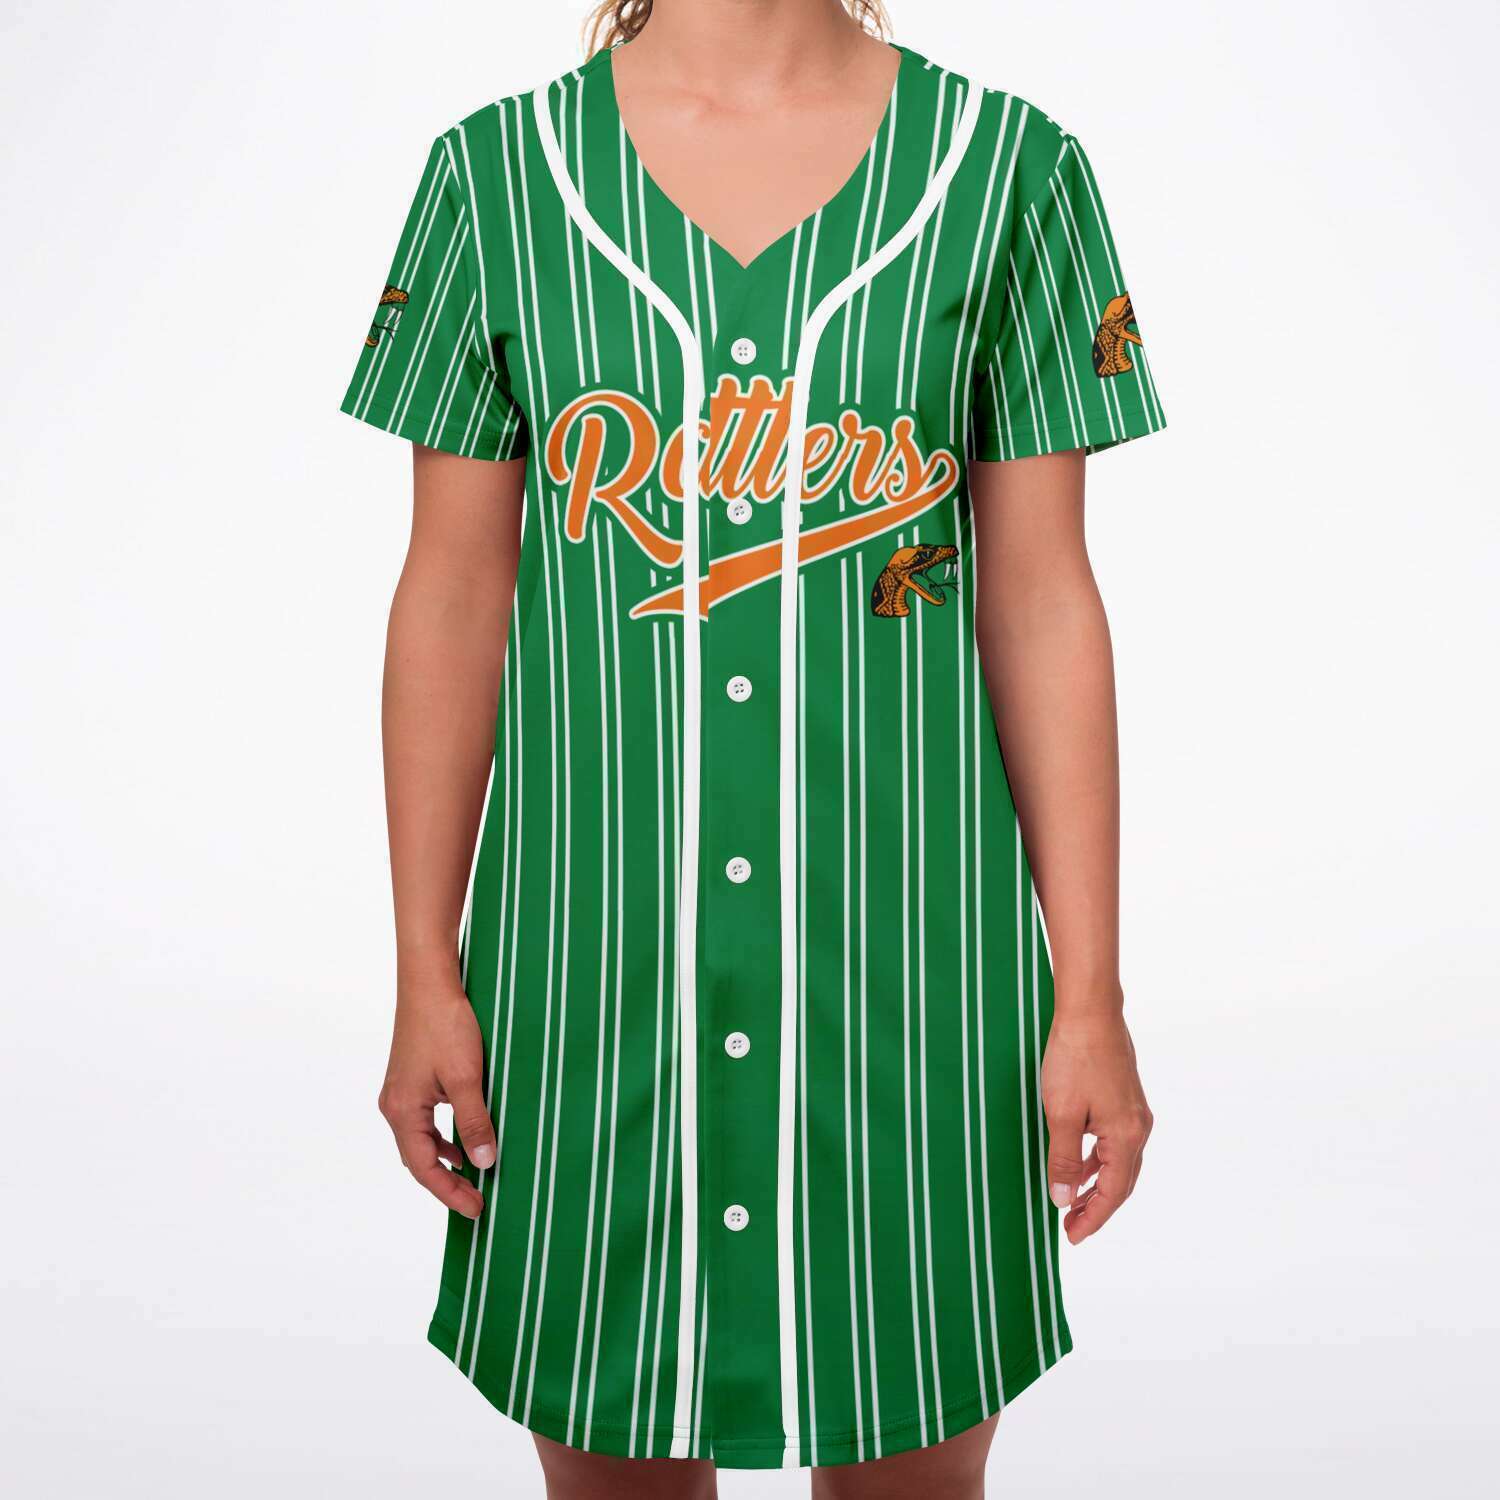 Famu Women Baseball jersey v3249 - joxtee